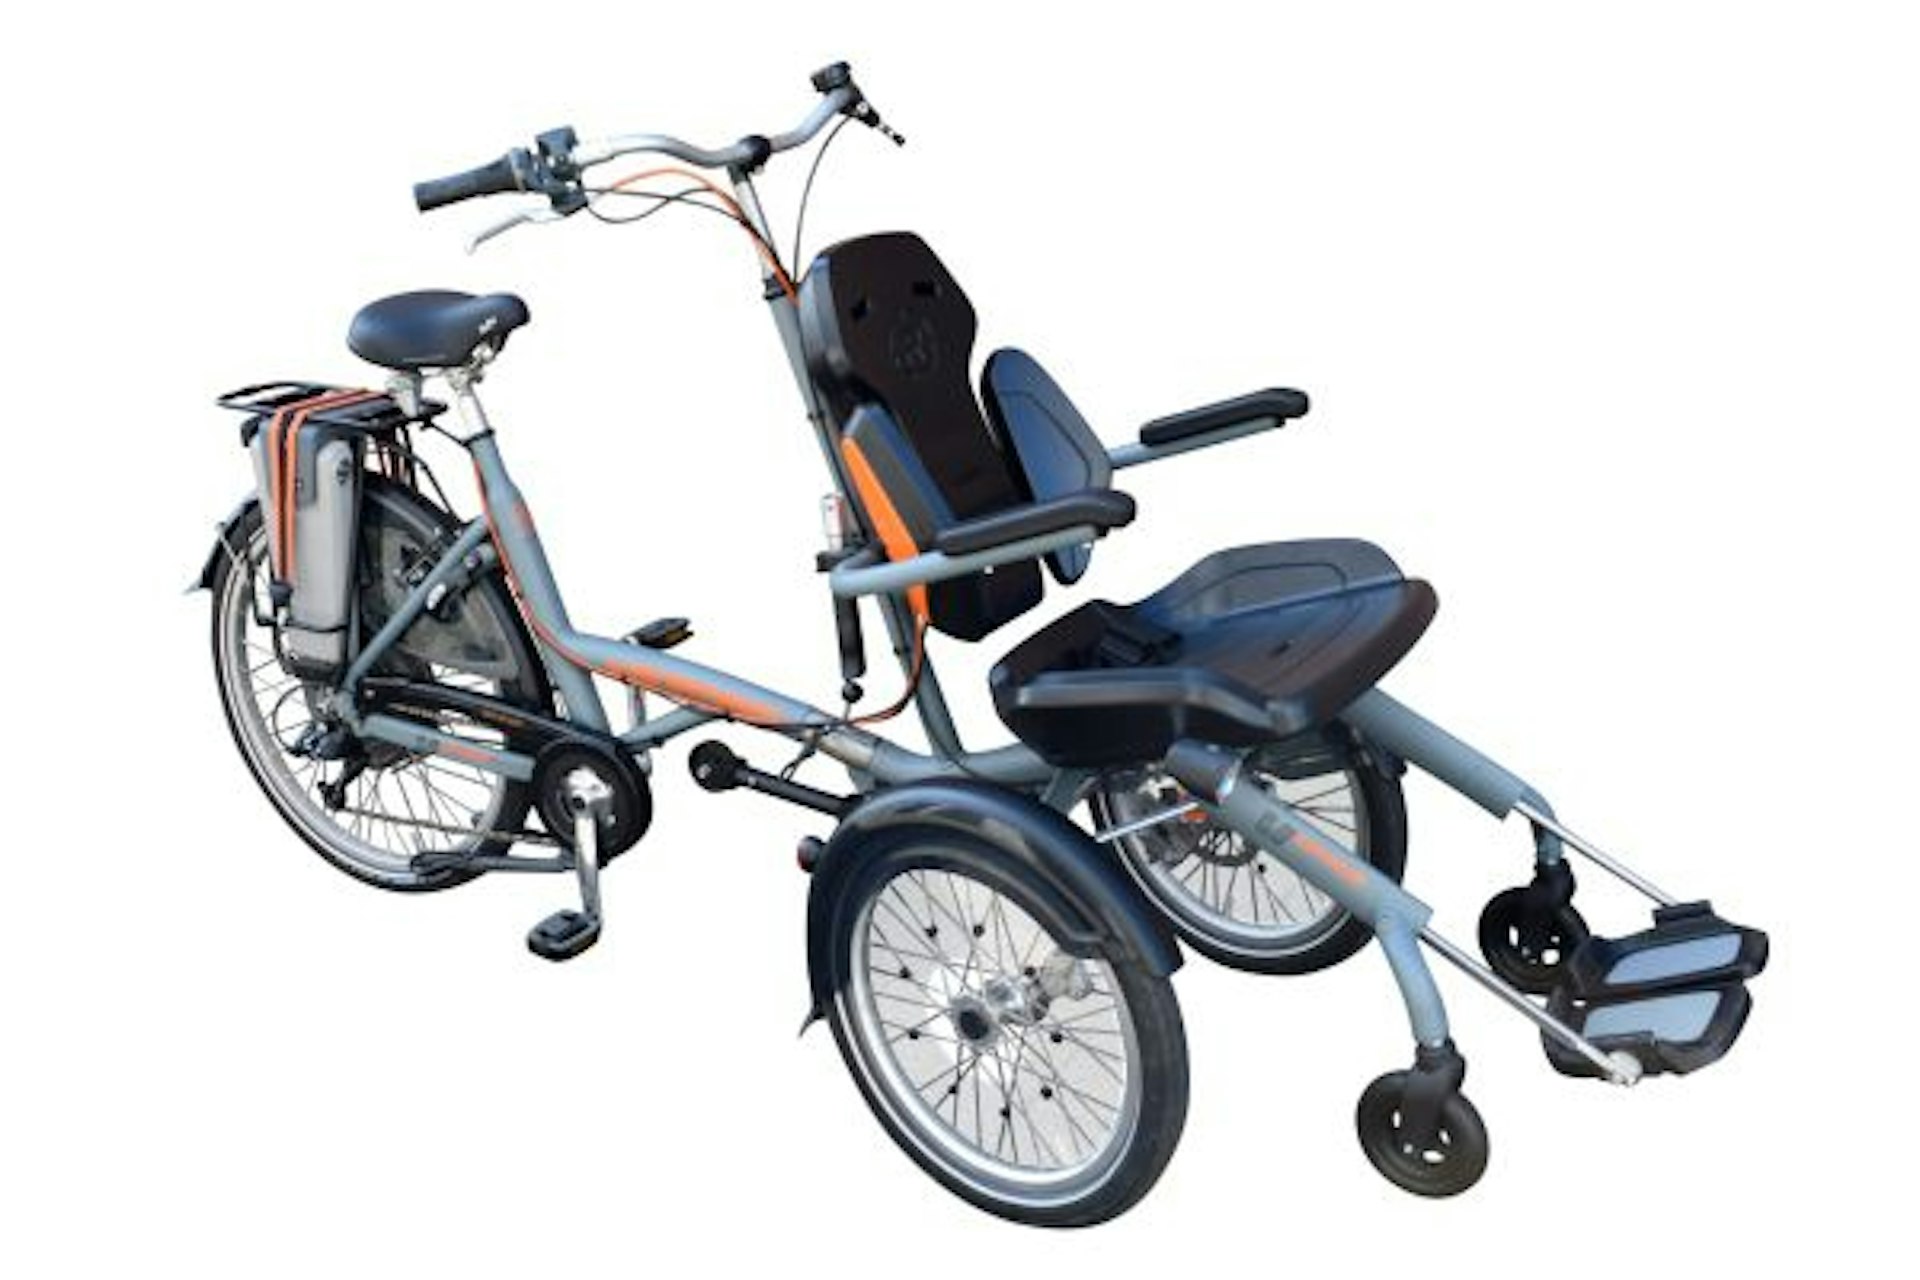 OPair wheelchair bike